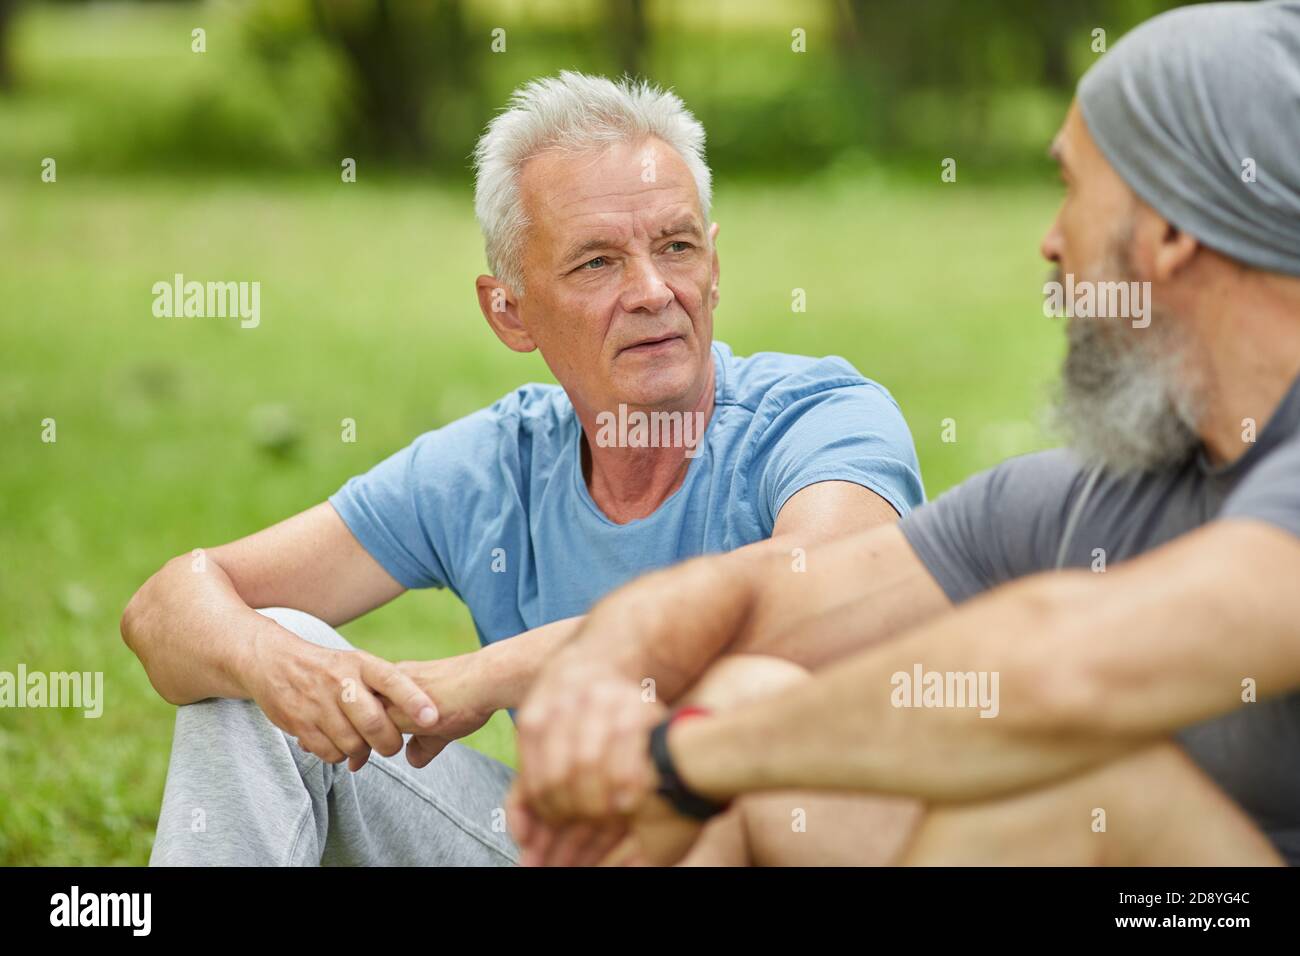 Mittleres Porträt von zwei modernen älteren Männern in lässigen Outfits Sitzen auf Gras im Park etwas diskutieren Stockfoto